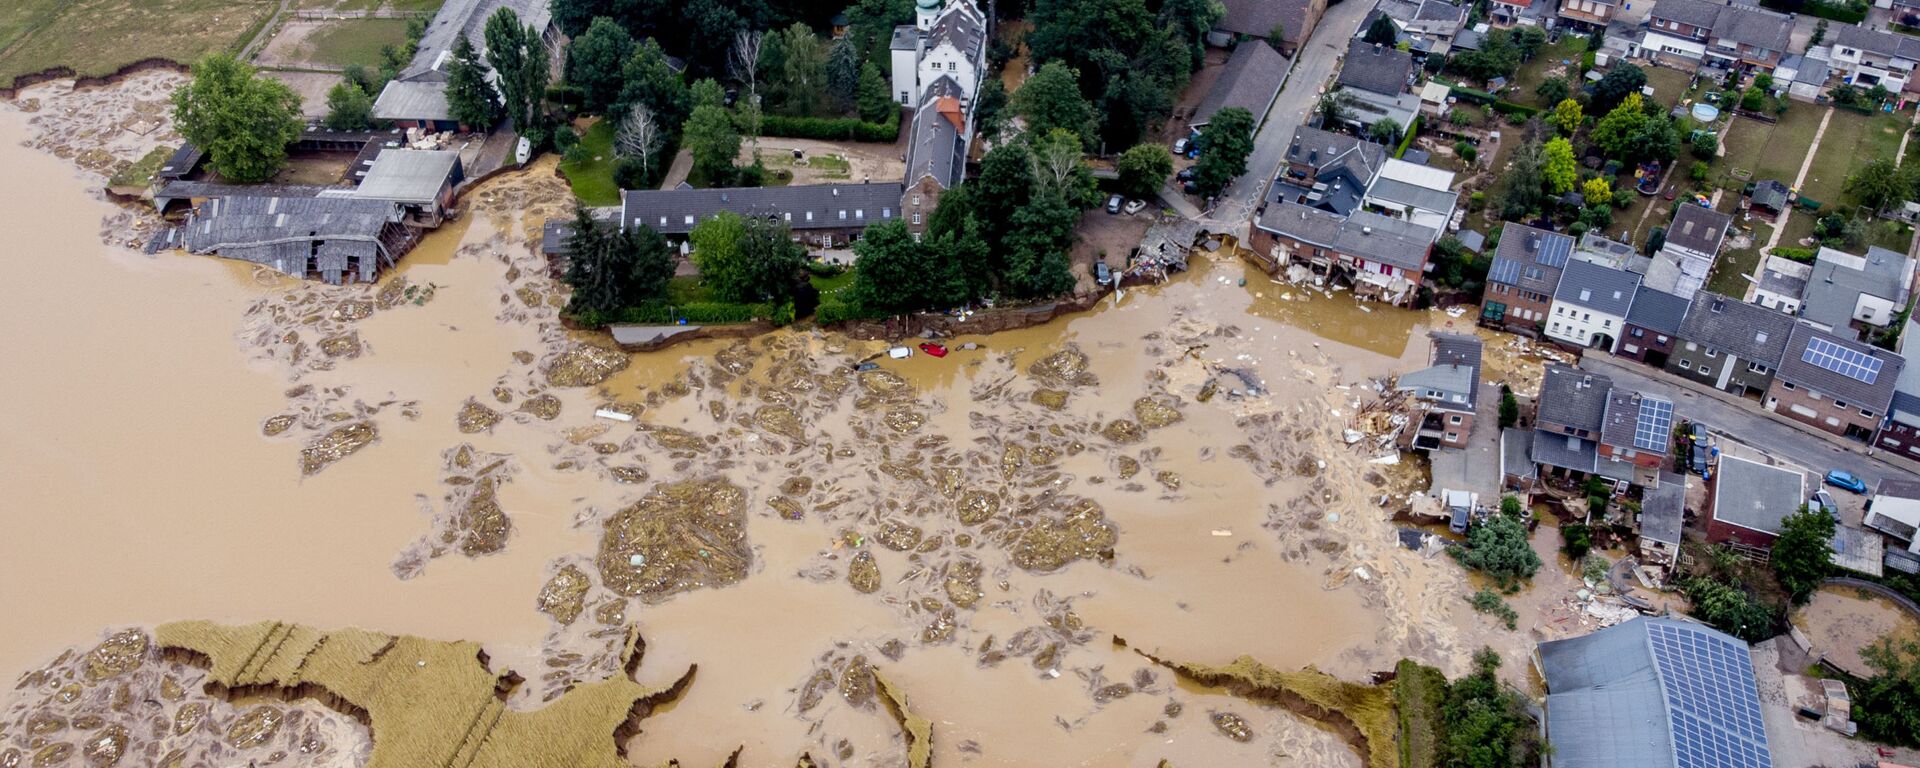 قلعة أثرية دمرت إثر فيضان ضخم أصاب مدينة إرفتشتات، ألمانيا 17 يوليو 2021 - سبوتنيك عربي, 1920, 31.07.2022